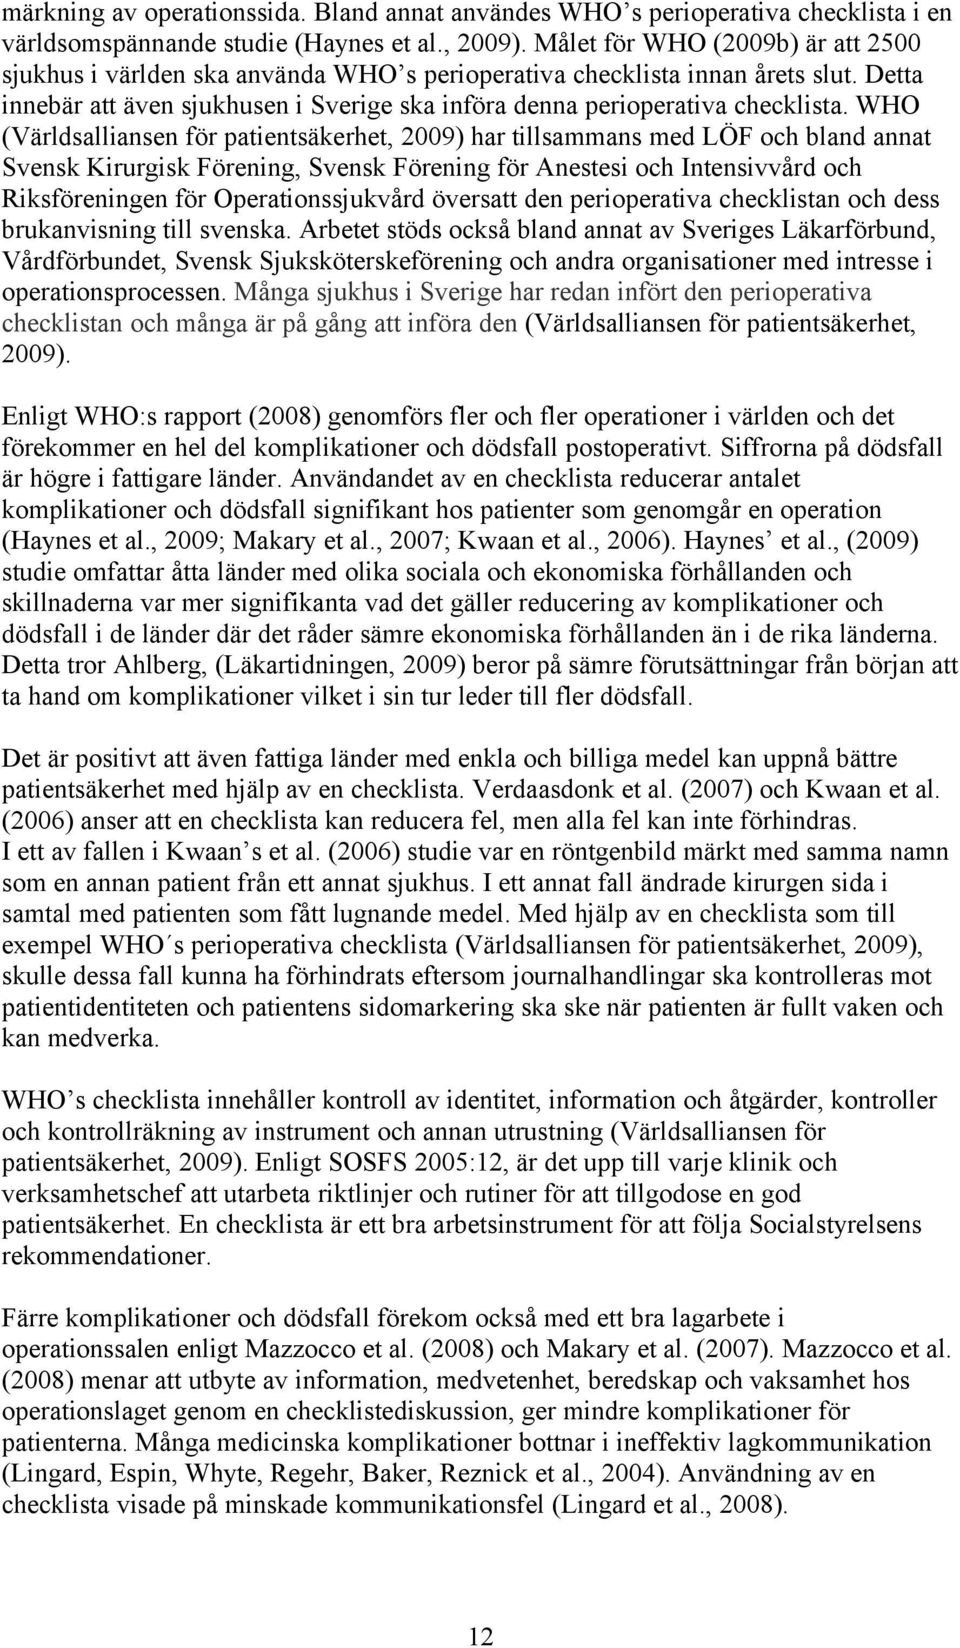 WHO (Världsalliansen för patientsäkerhet, 2009) har tillsammans med LÖF och bland annat Svensk Kirurgisk Förening, Svensk Förening för Anestesi och Intensivvård och Riksföreningen för